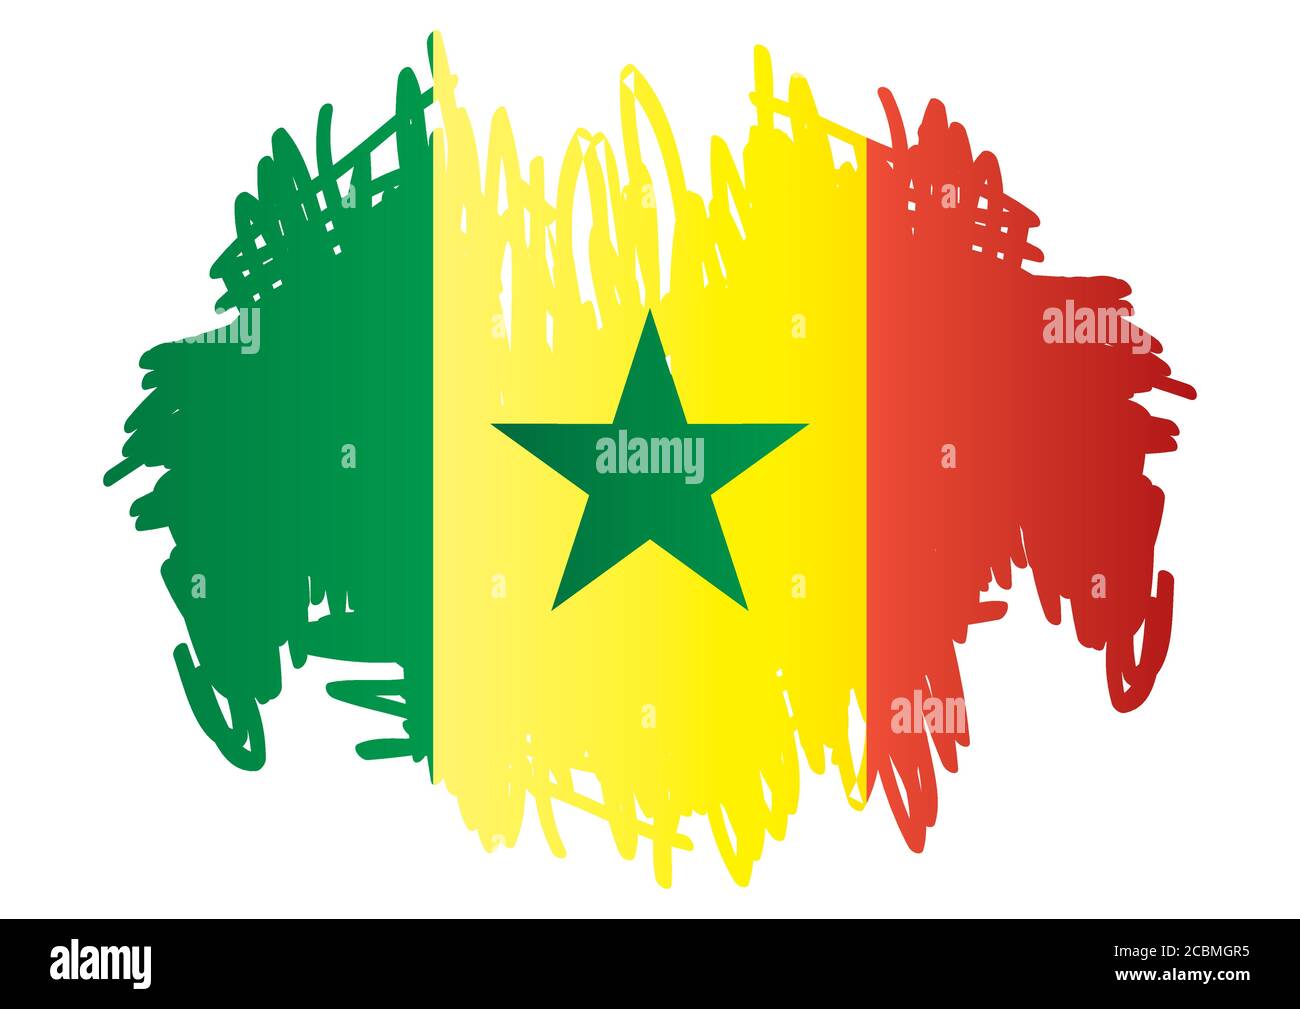 Drapeau du Sénégal, République du Sénégal. Modèle pour la conception de prix, un document officiel avec le drapeau du Sénégal. Illustration vectorielle colorée et lumineuse. Illustration de Vecteur